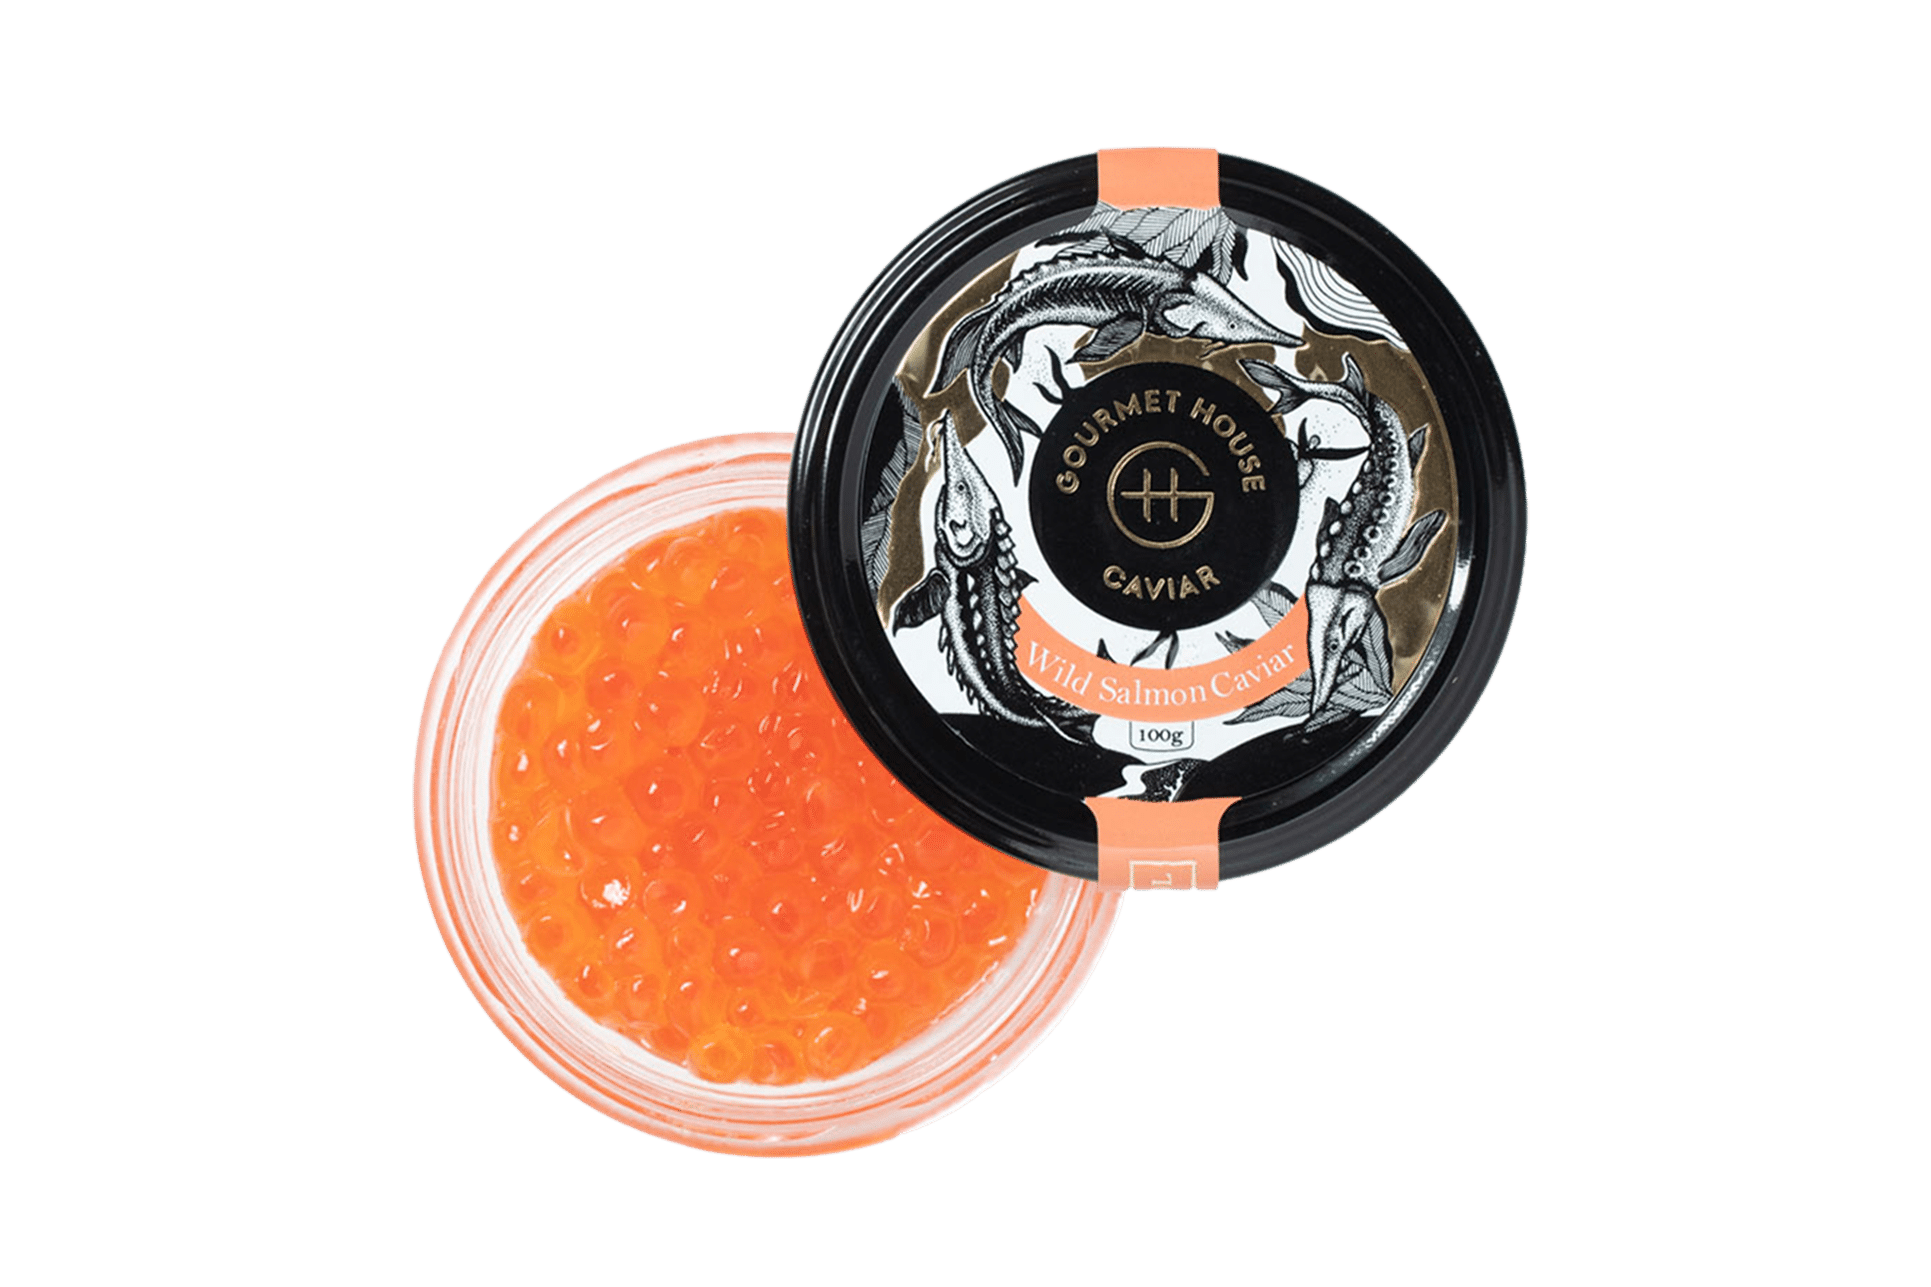 Wild Salmon Caviar